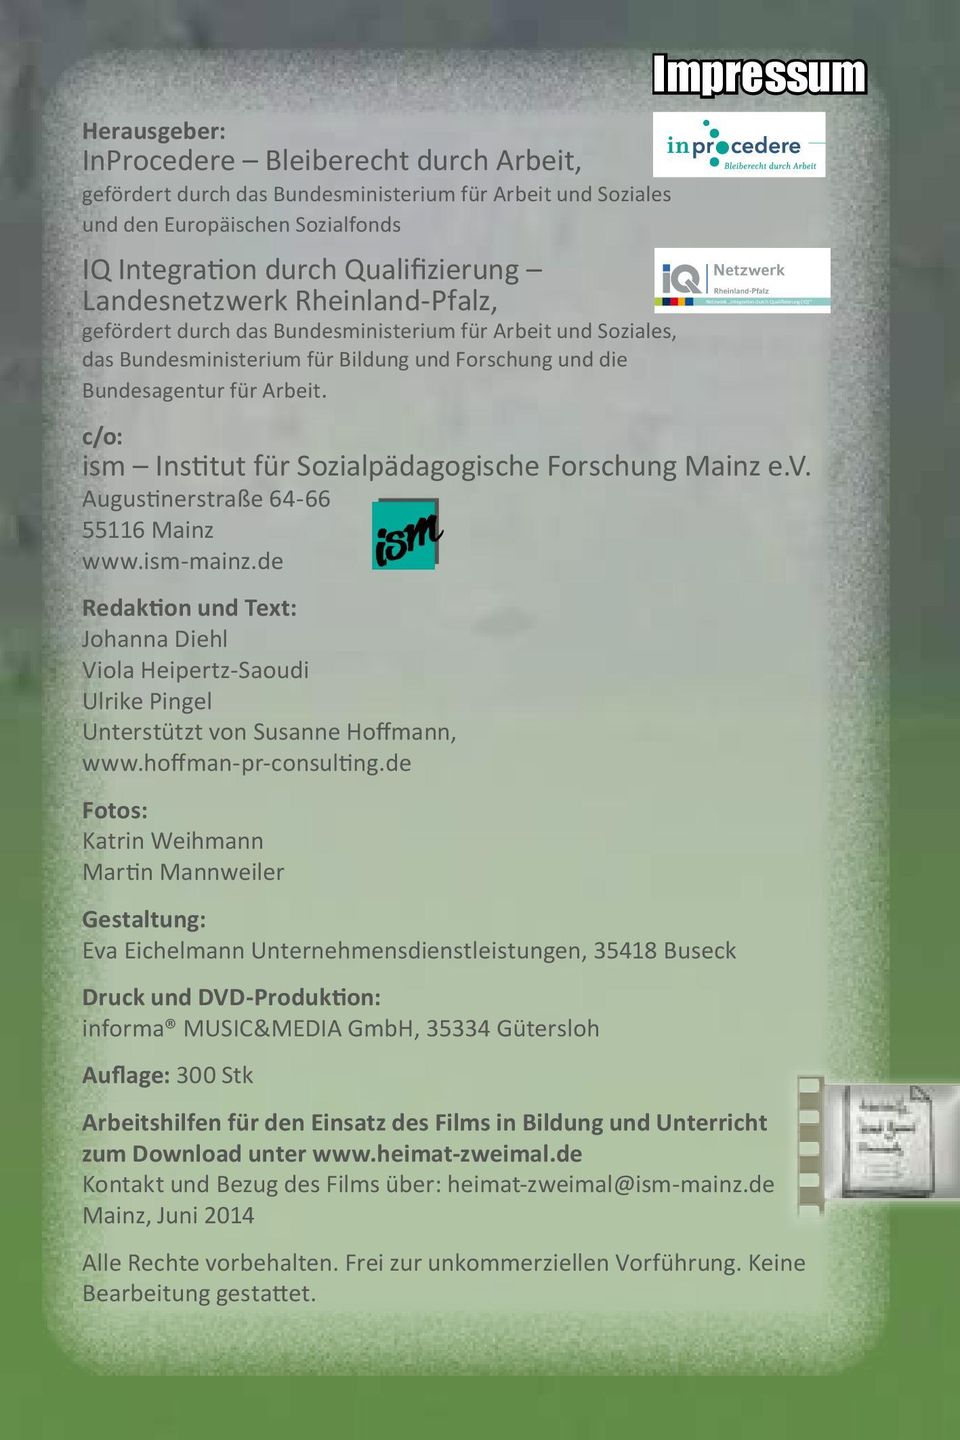 Impressum Netzwerk Integration durch Qualifizierung (IQ) c/o: ism Institut für Sozialpädagogische Forschung Mainz e.v. Augustinerstraße 64-66 55116 Mainz www.ism-mainz.